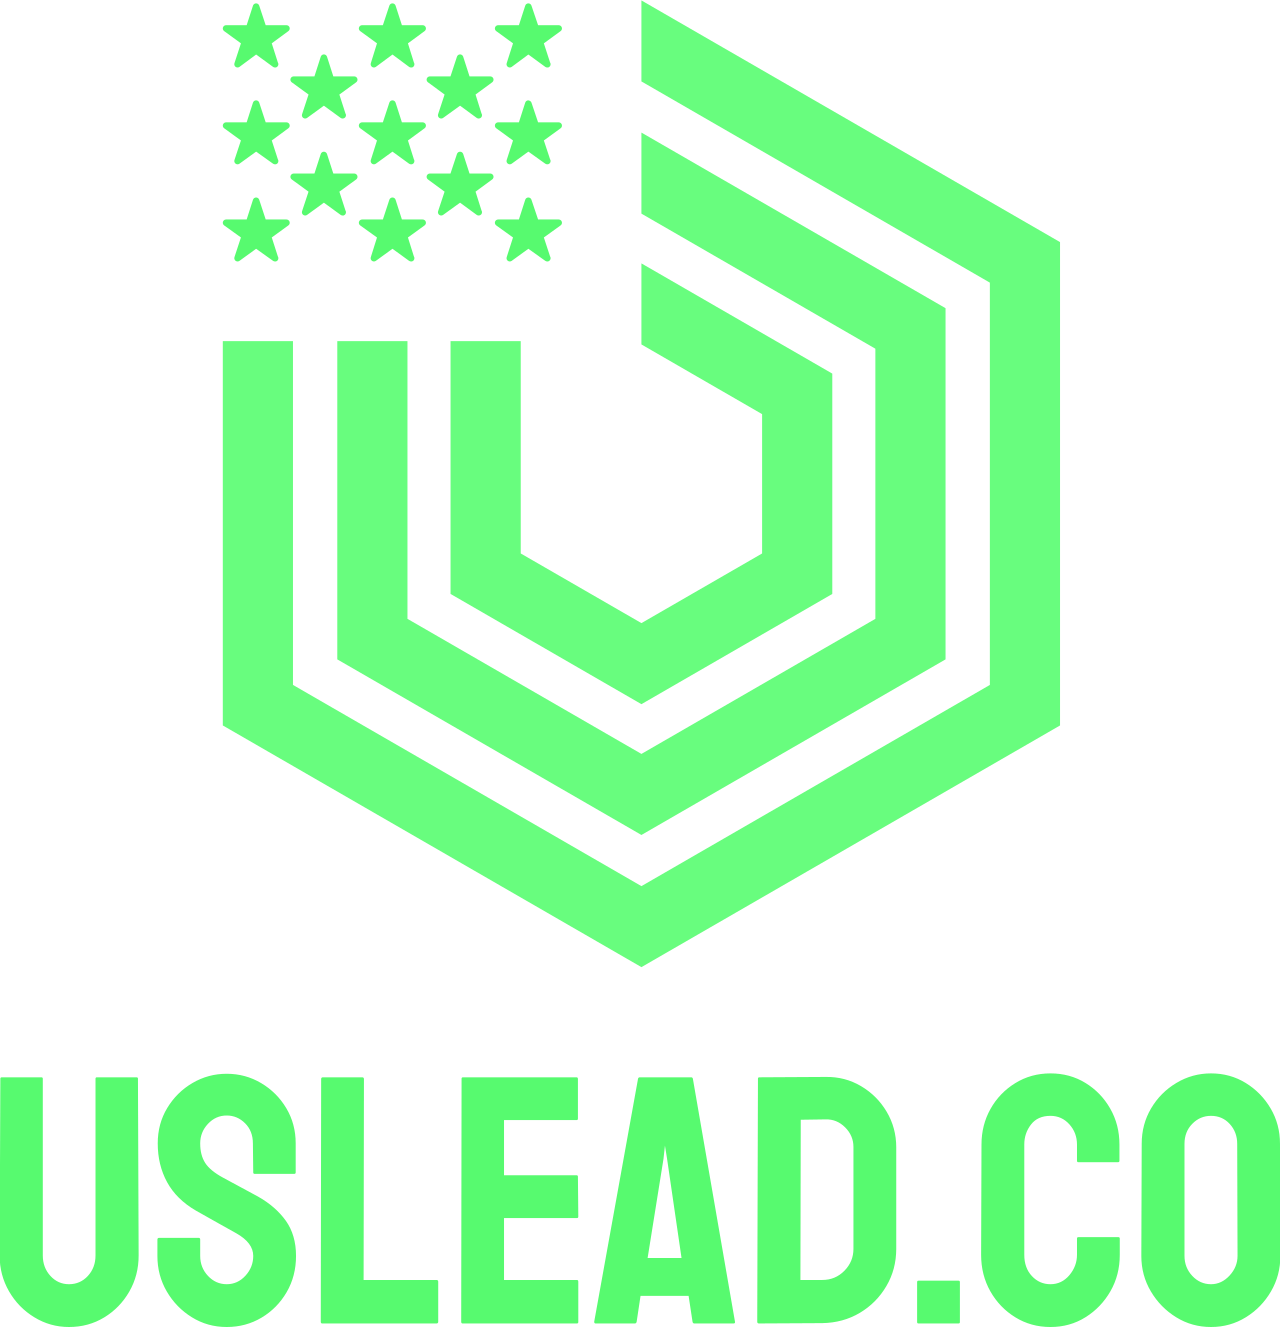 Uslead.co's web page